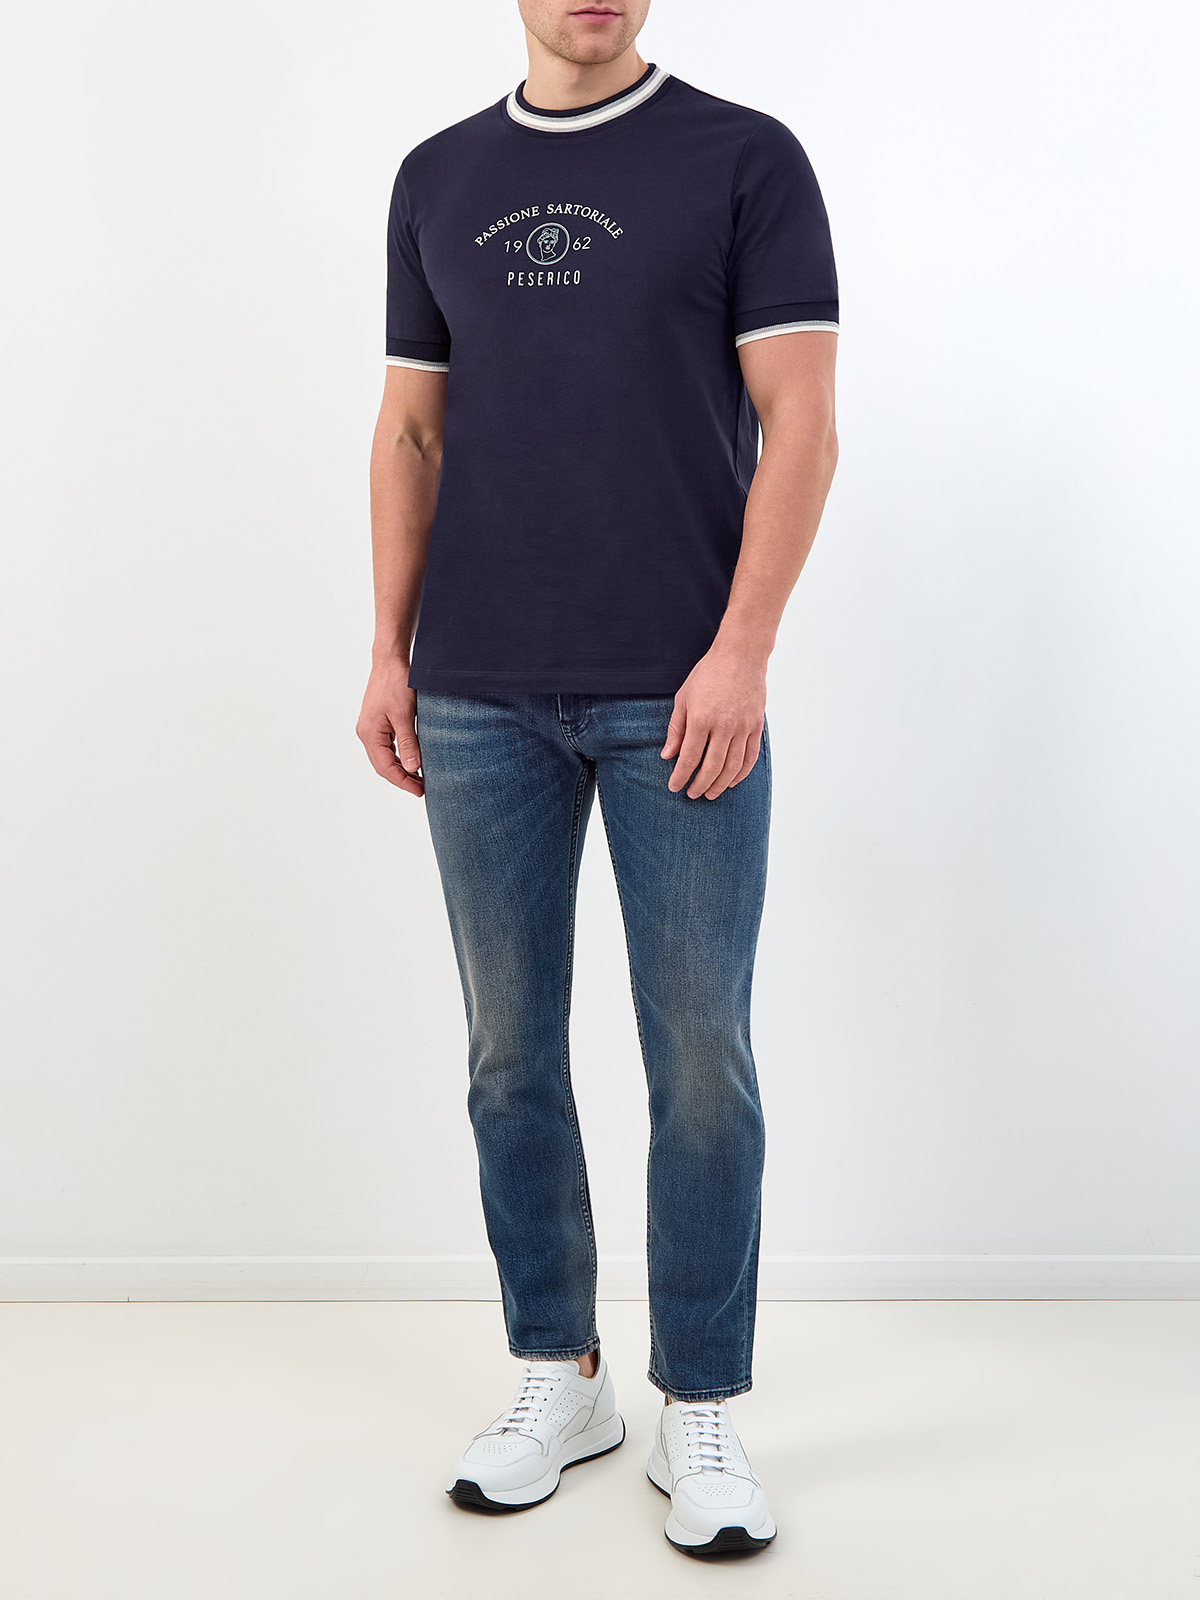 Хлопковая футболка с контрастной отделкой и принтом PESERICO, цвет синий, размер 48 - фото 2